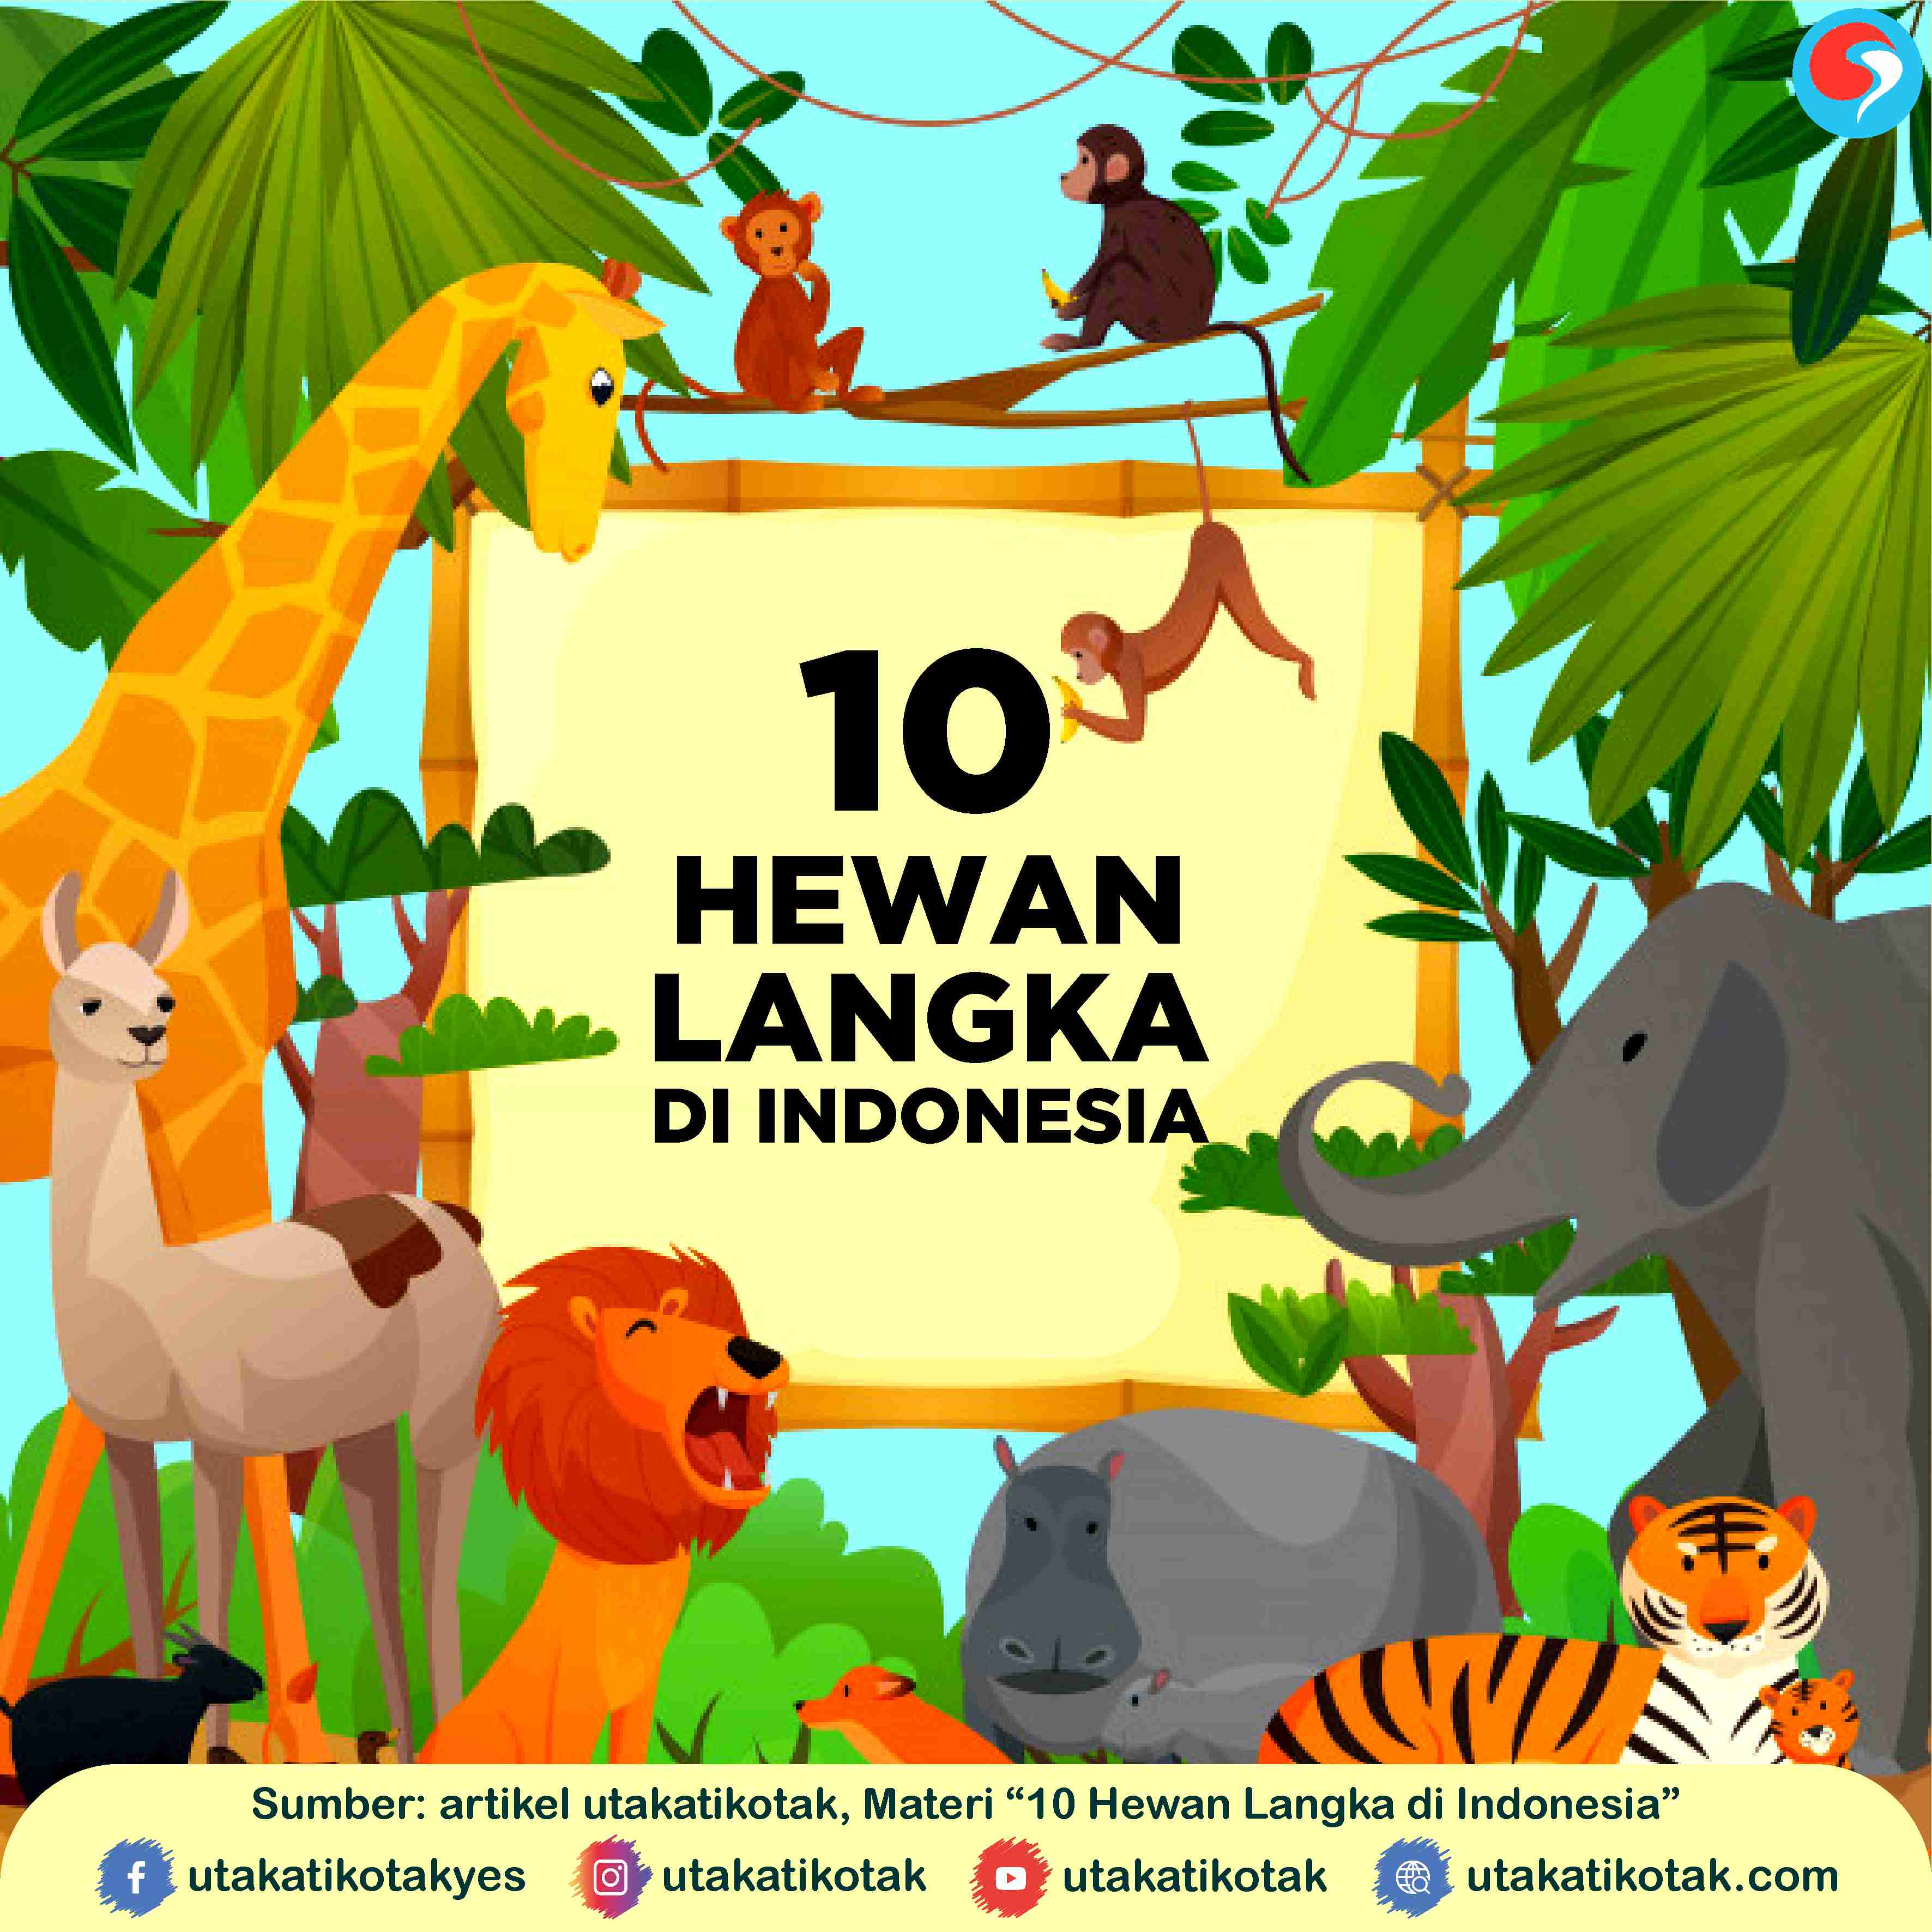 10 Hewan Langka yang Dilindungi Di Indonesia